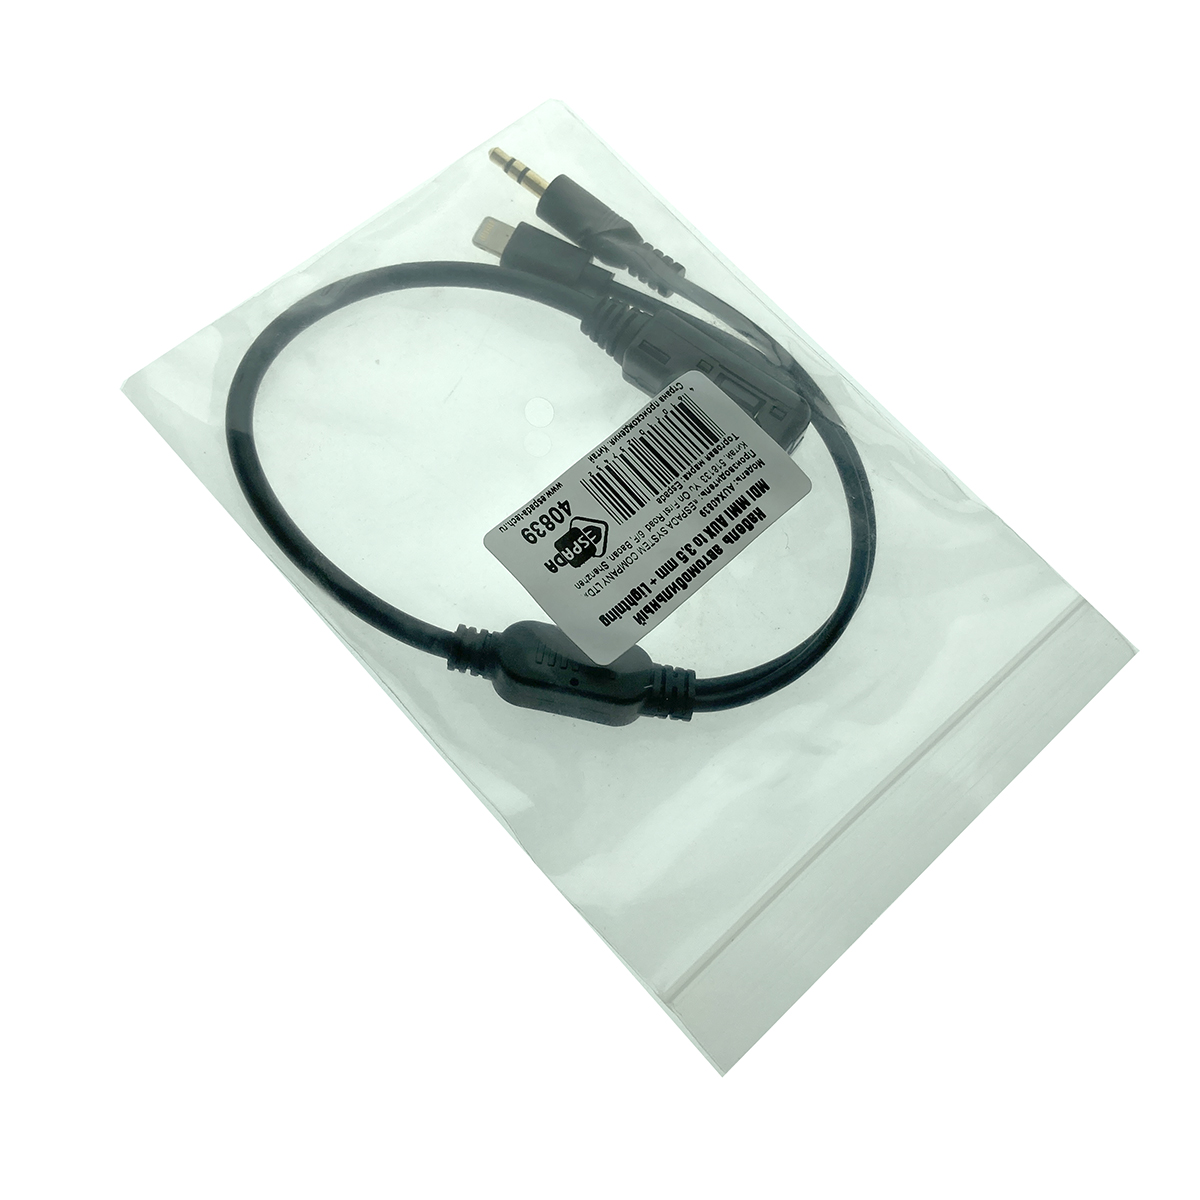 Автомобильный аудио кабель AUX MDI MMI to 3,5 mm + Lightning 8 pin Ipad, Iphone для Audi, Volkswagen, Skoda, Seat, модель AUX40839